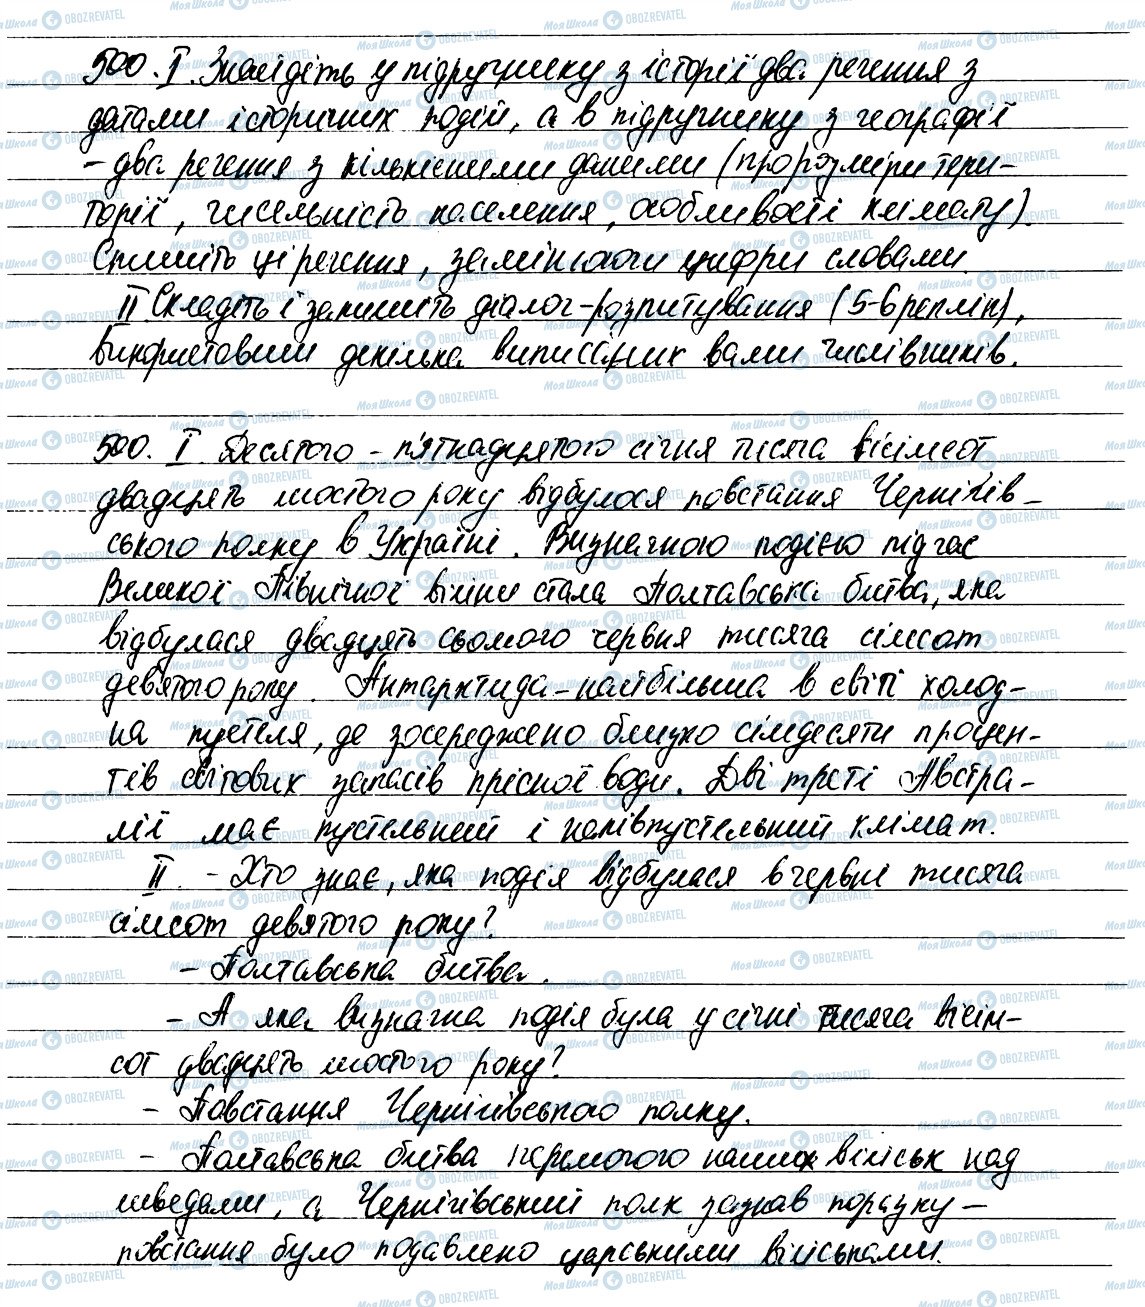 ГДЗ Українська мова 6 клас сторінка 500